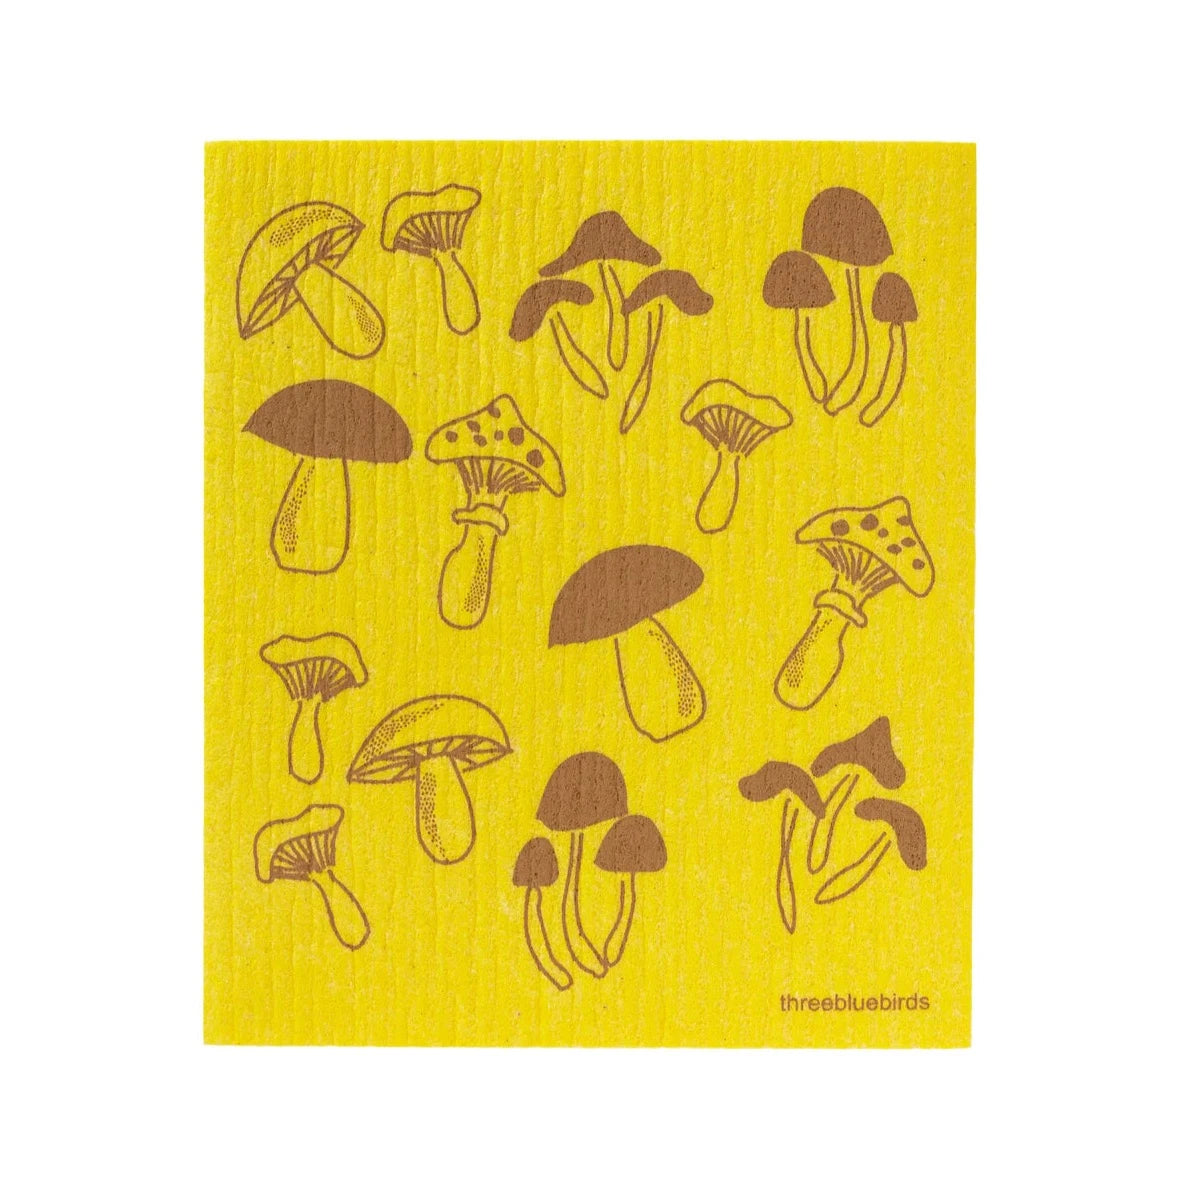 yellow Swedish dish cloth with brown fungi printed on it